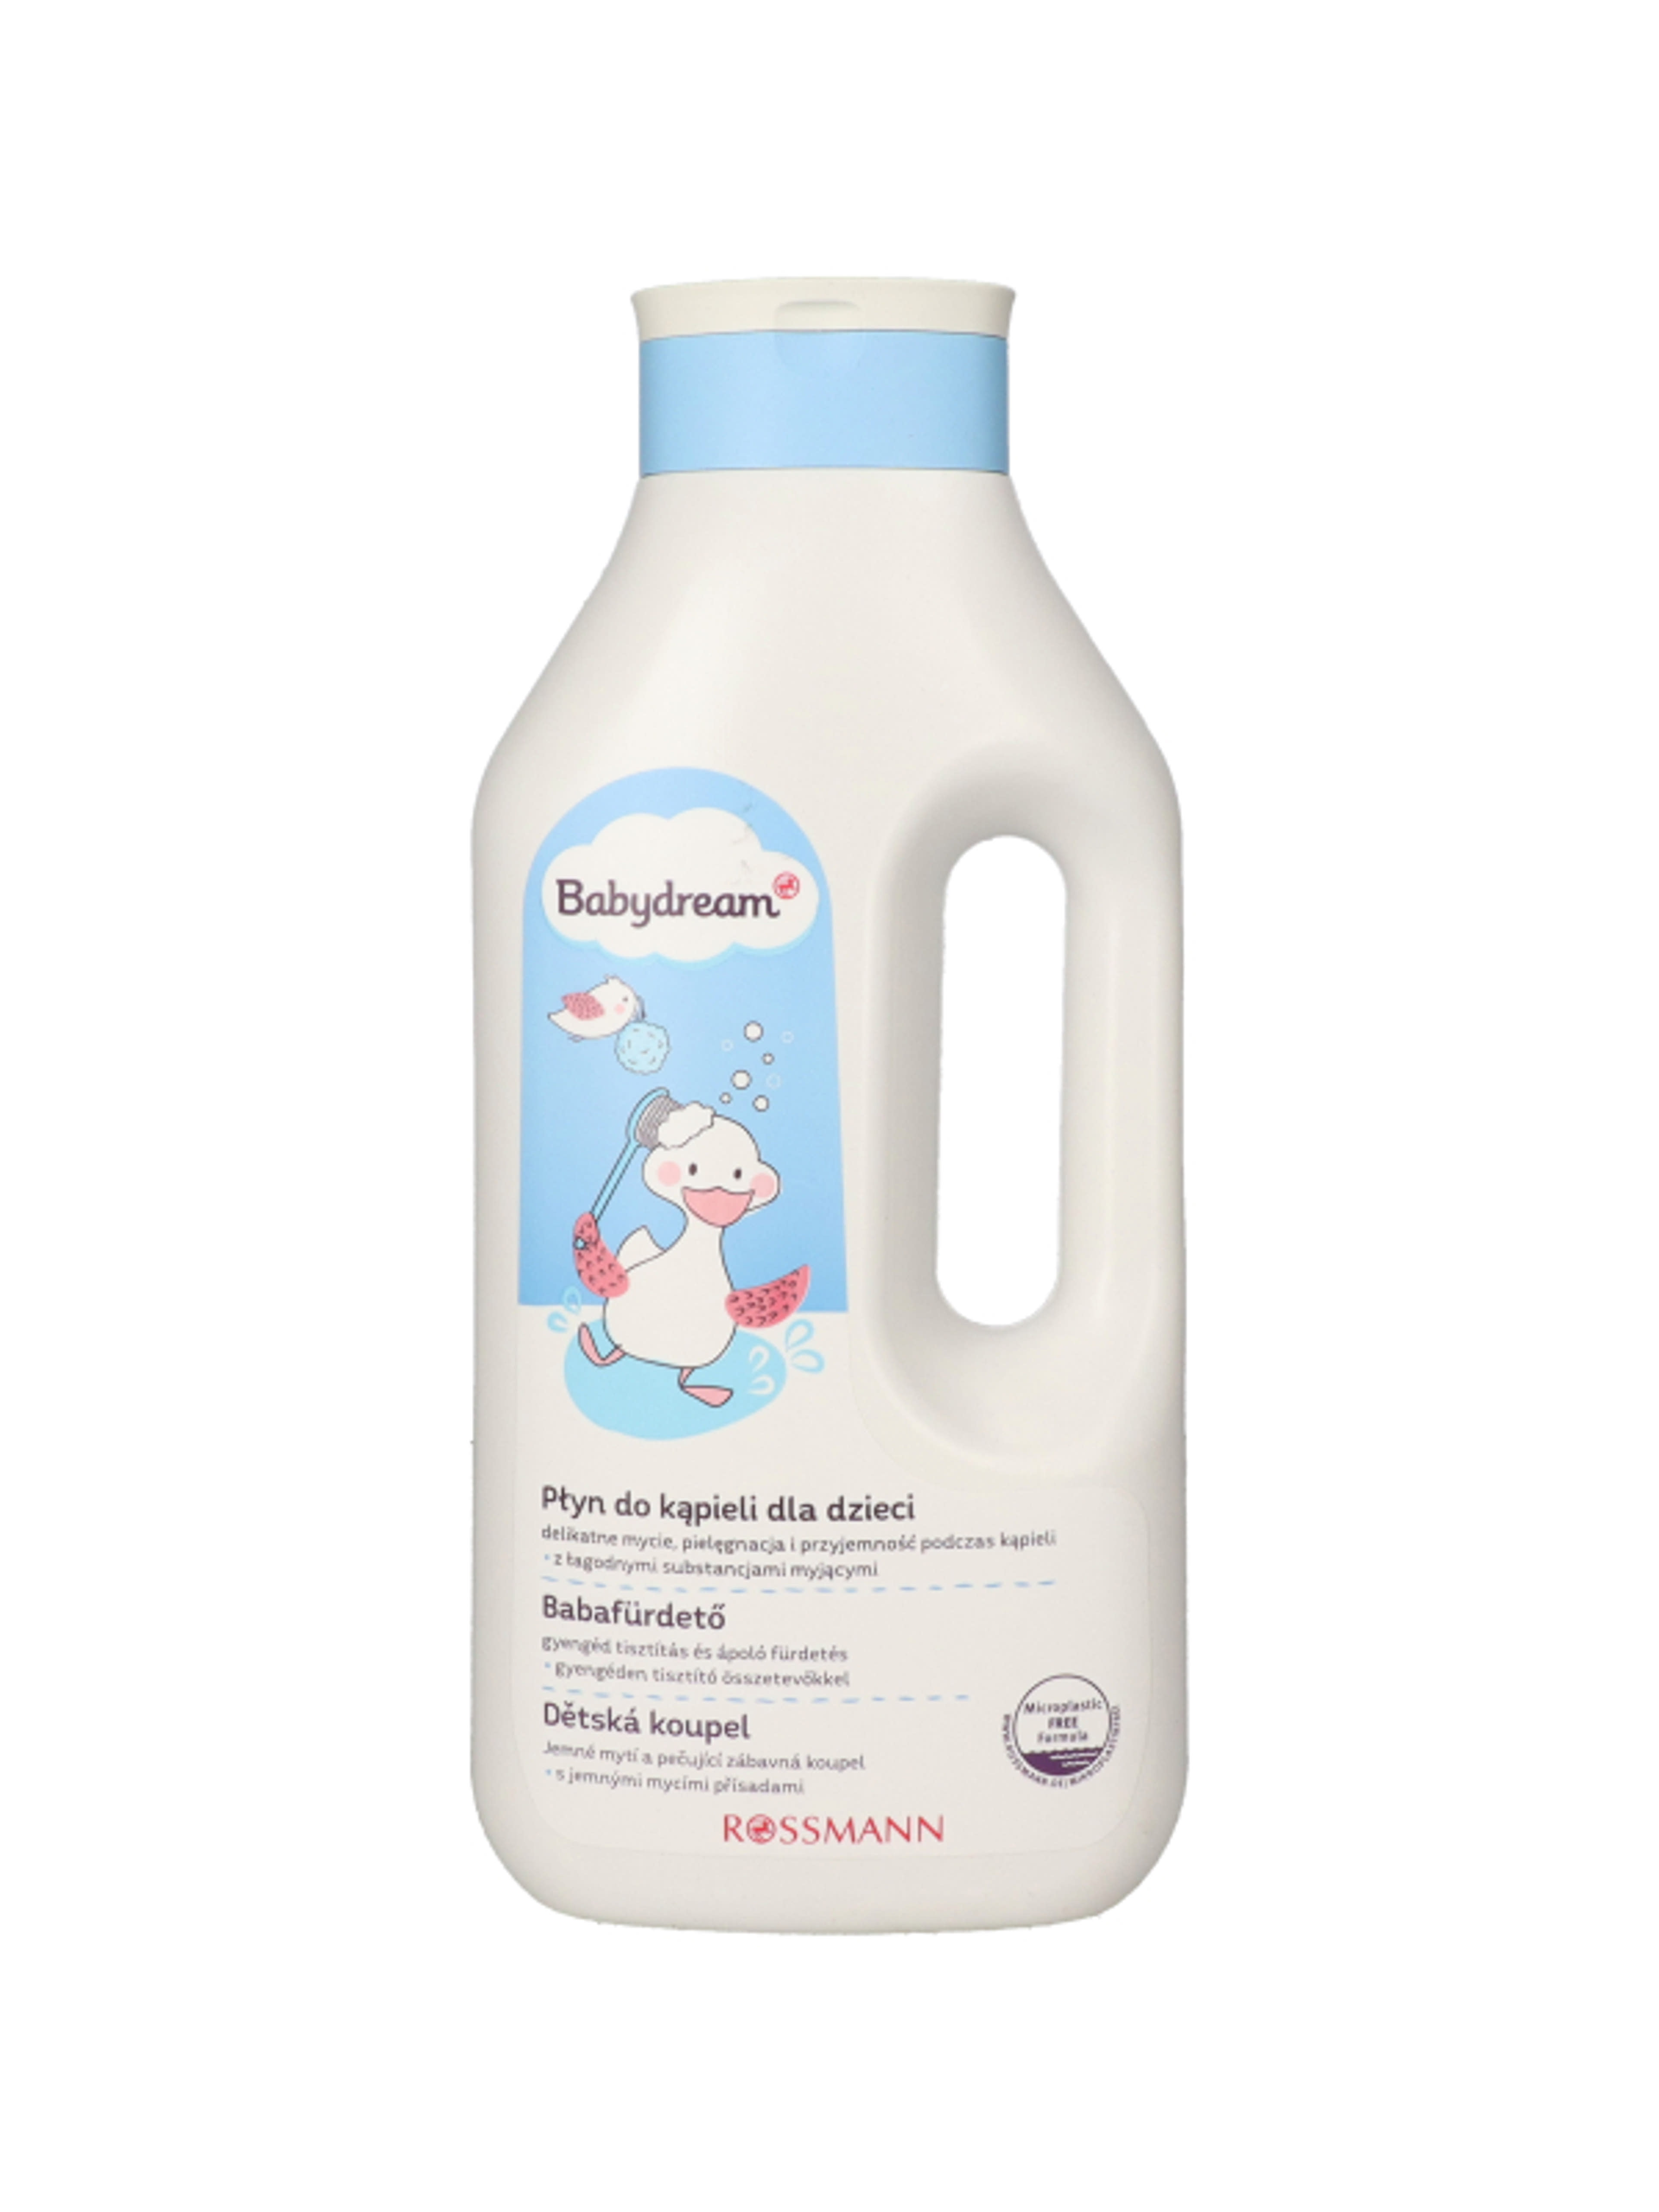 Babydream Sensitive családi fürdető - 1000 ml-1